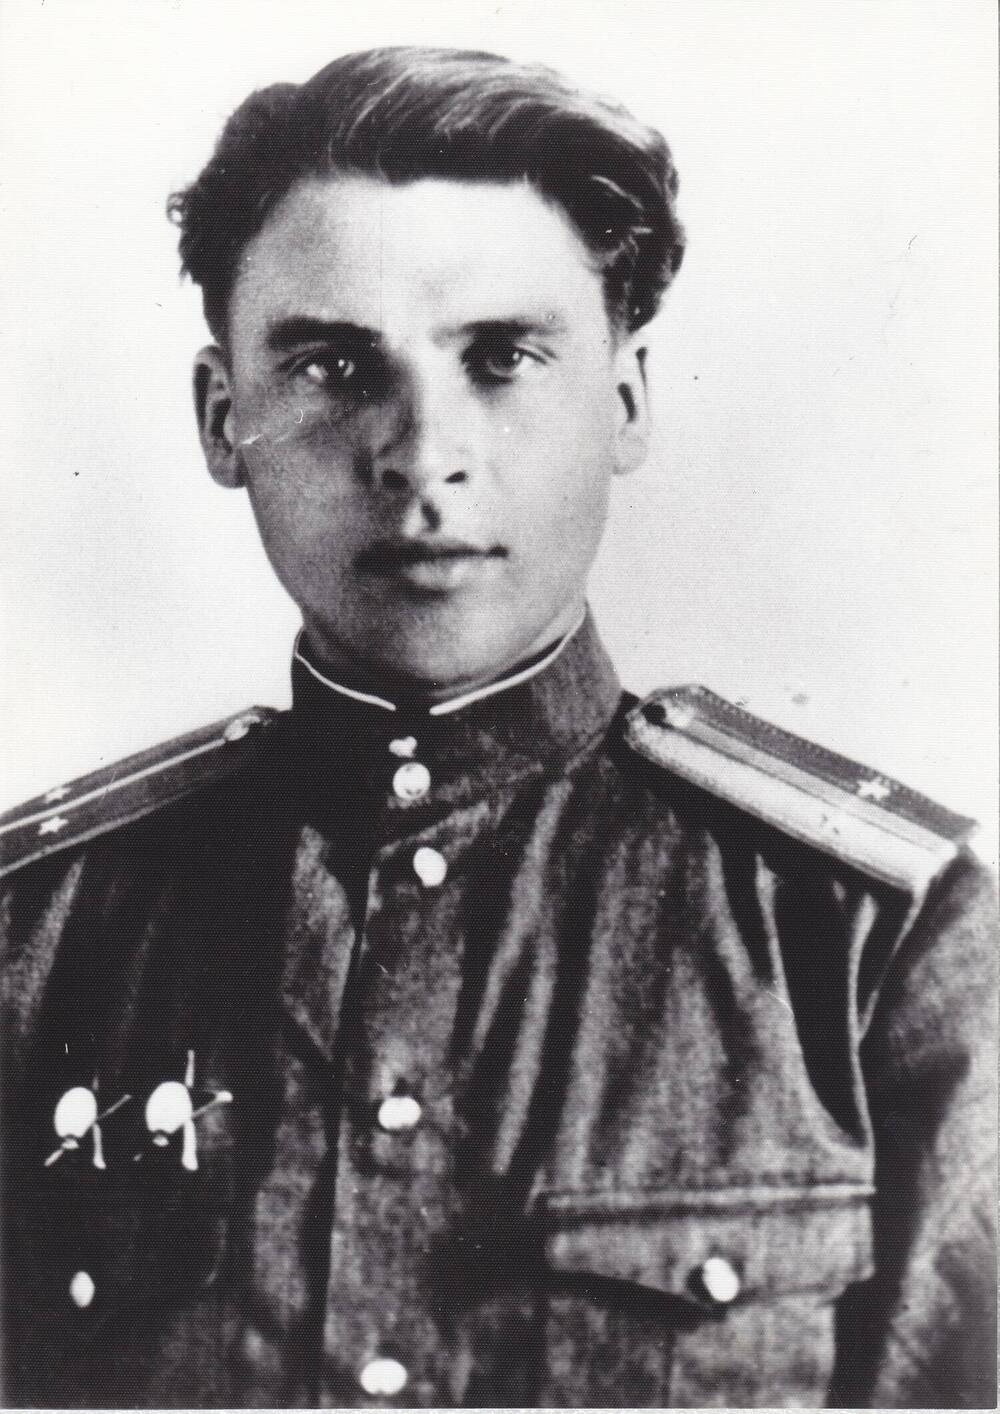 Фото Кулешова Вениамина Сергеевича в военной форме 1944-45 гг